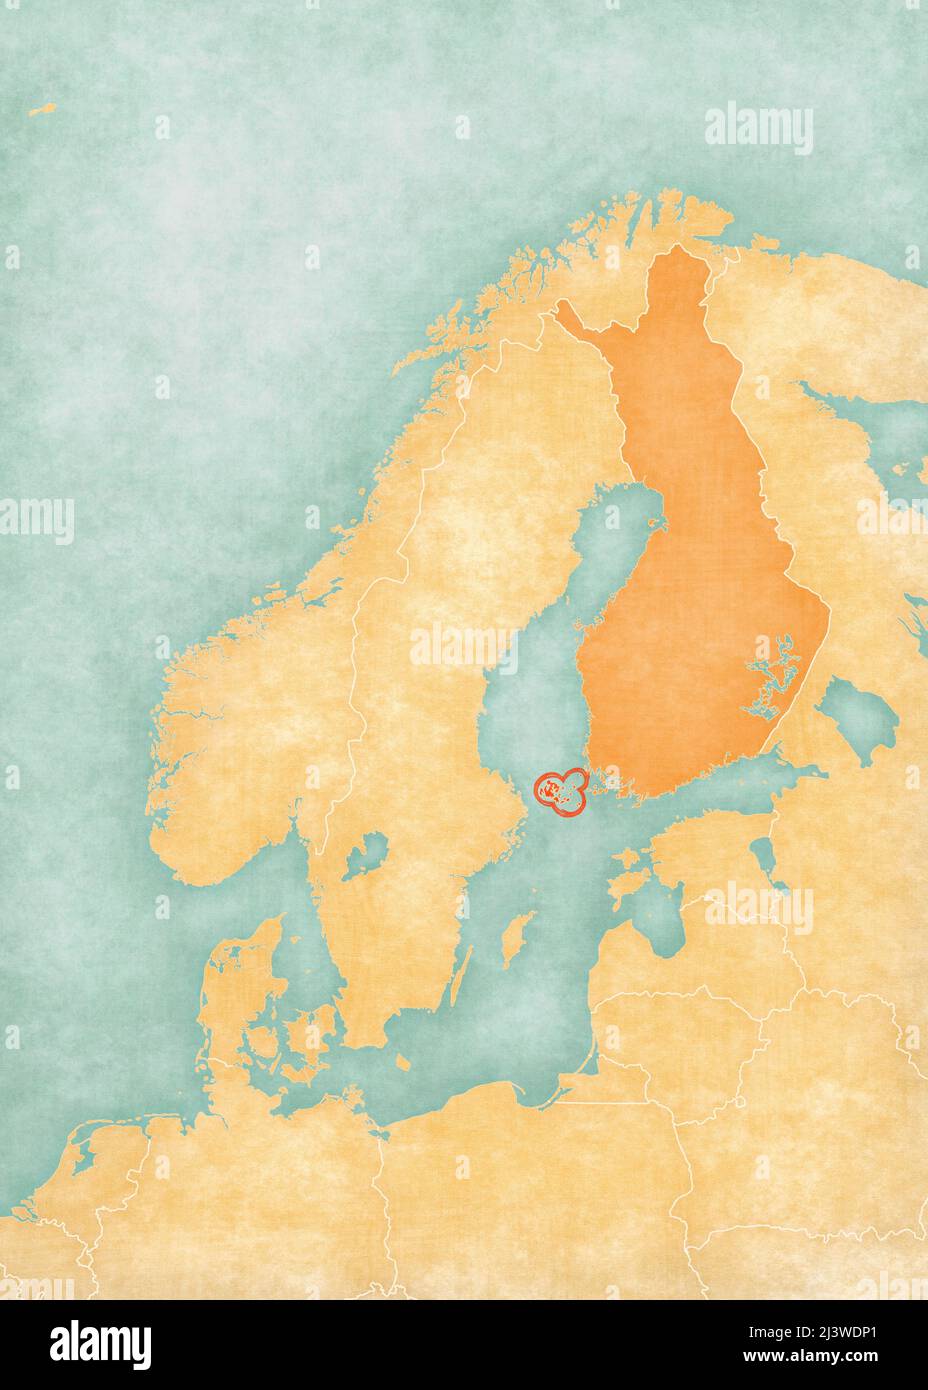 Isole Aland (Finlandia) sulla mappa della Scandinavia. La mappa è in morbido grunge e vintage stile, come la pittura acquerello su carta vecchia. Foto Stock